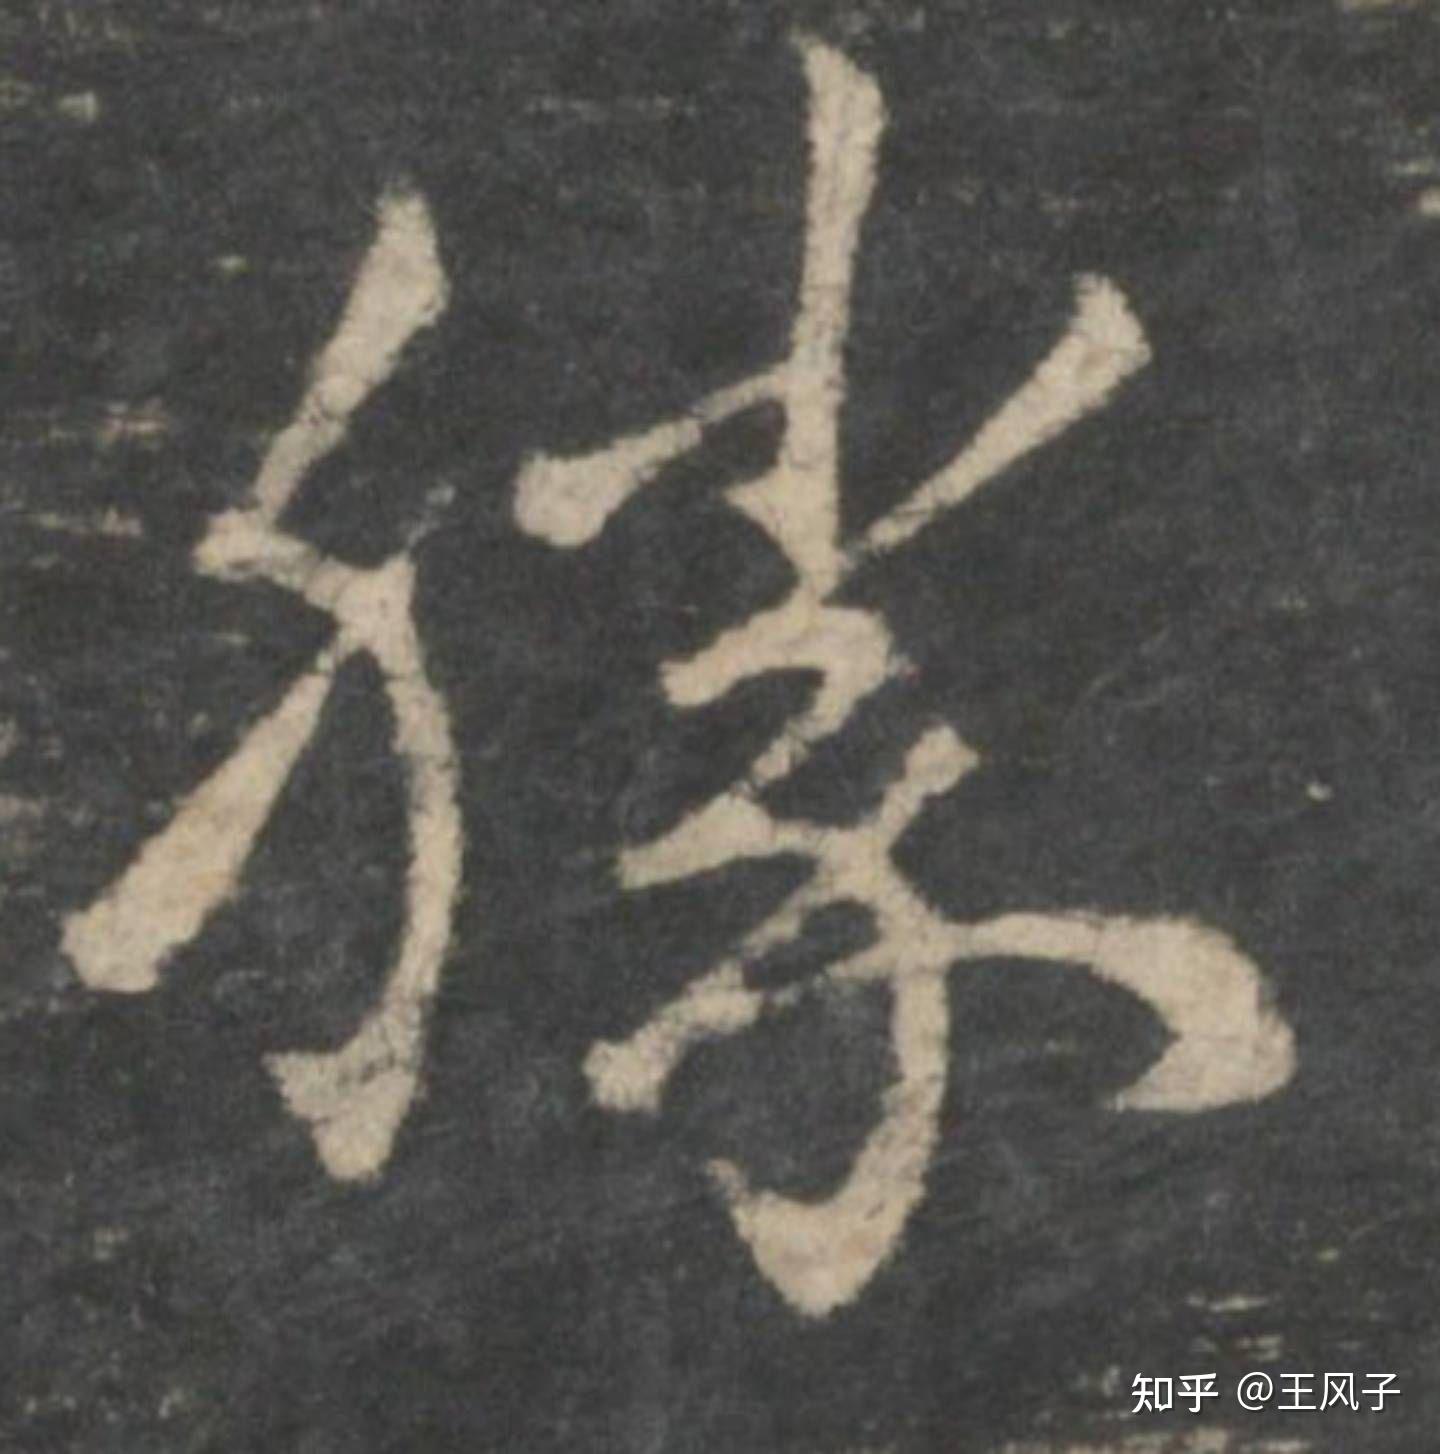 王羲之的这个"胜"字的笔画到底怎么写呢?